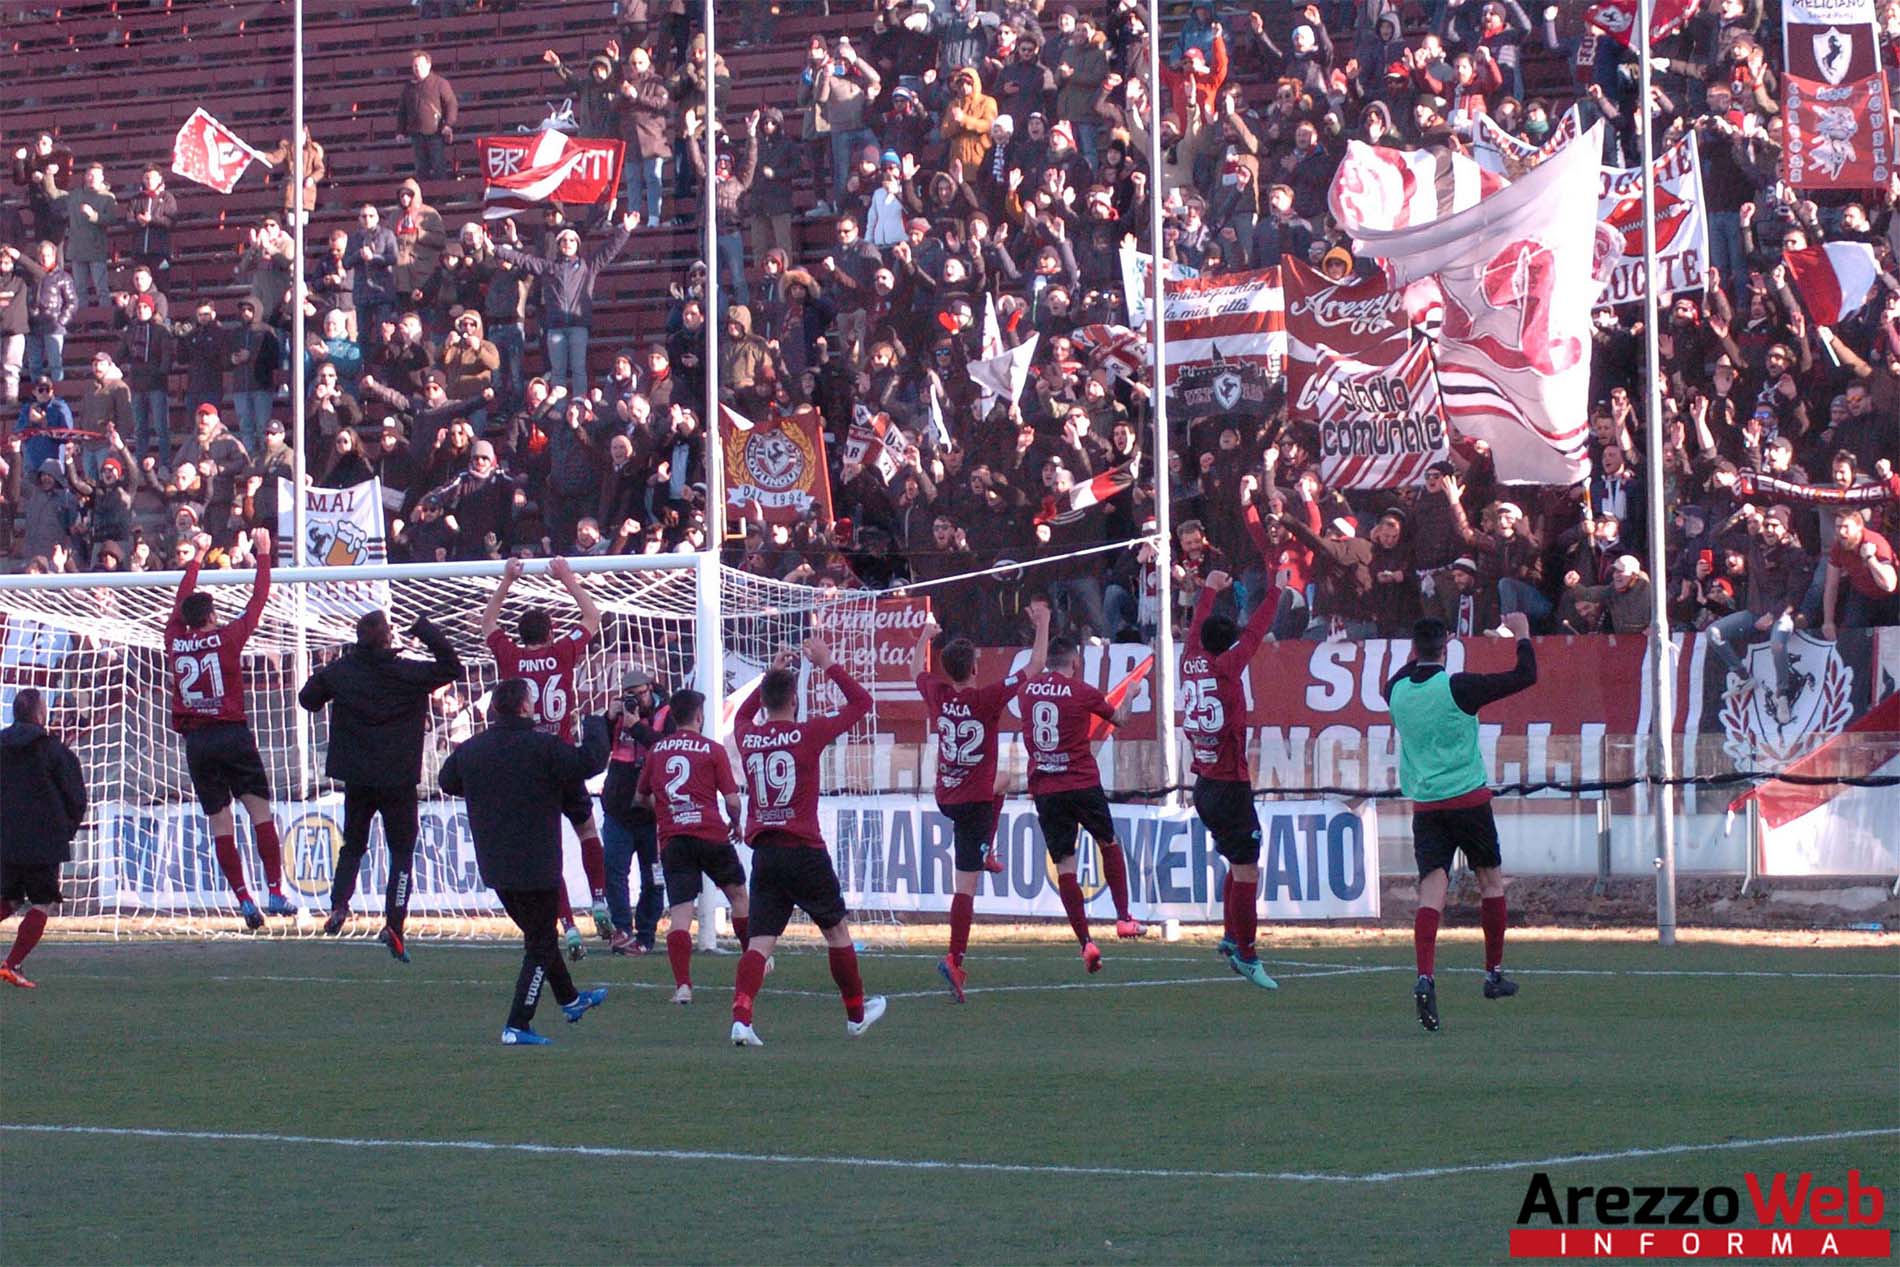 Arezzo-Olbia 1-0 – fotogallery